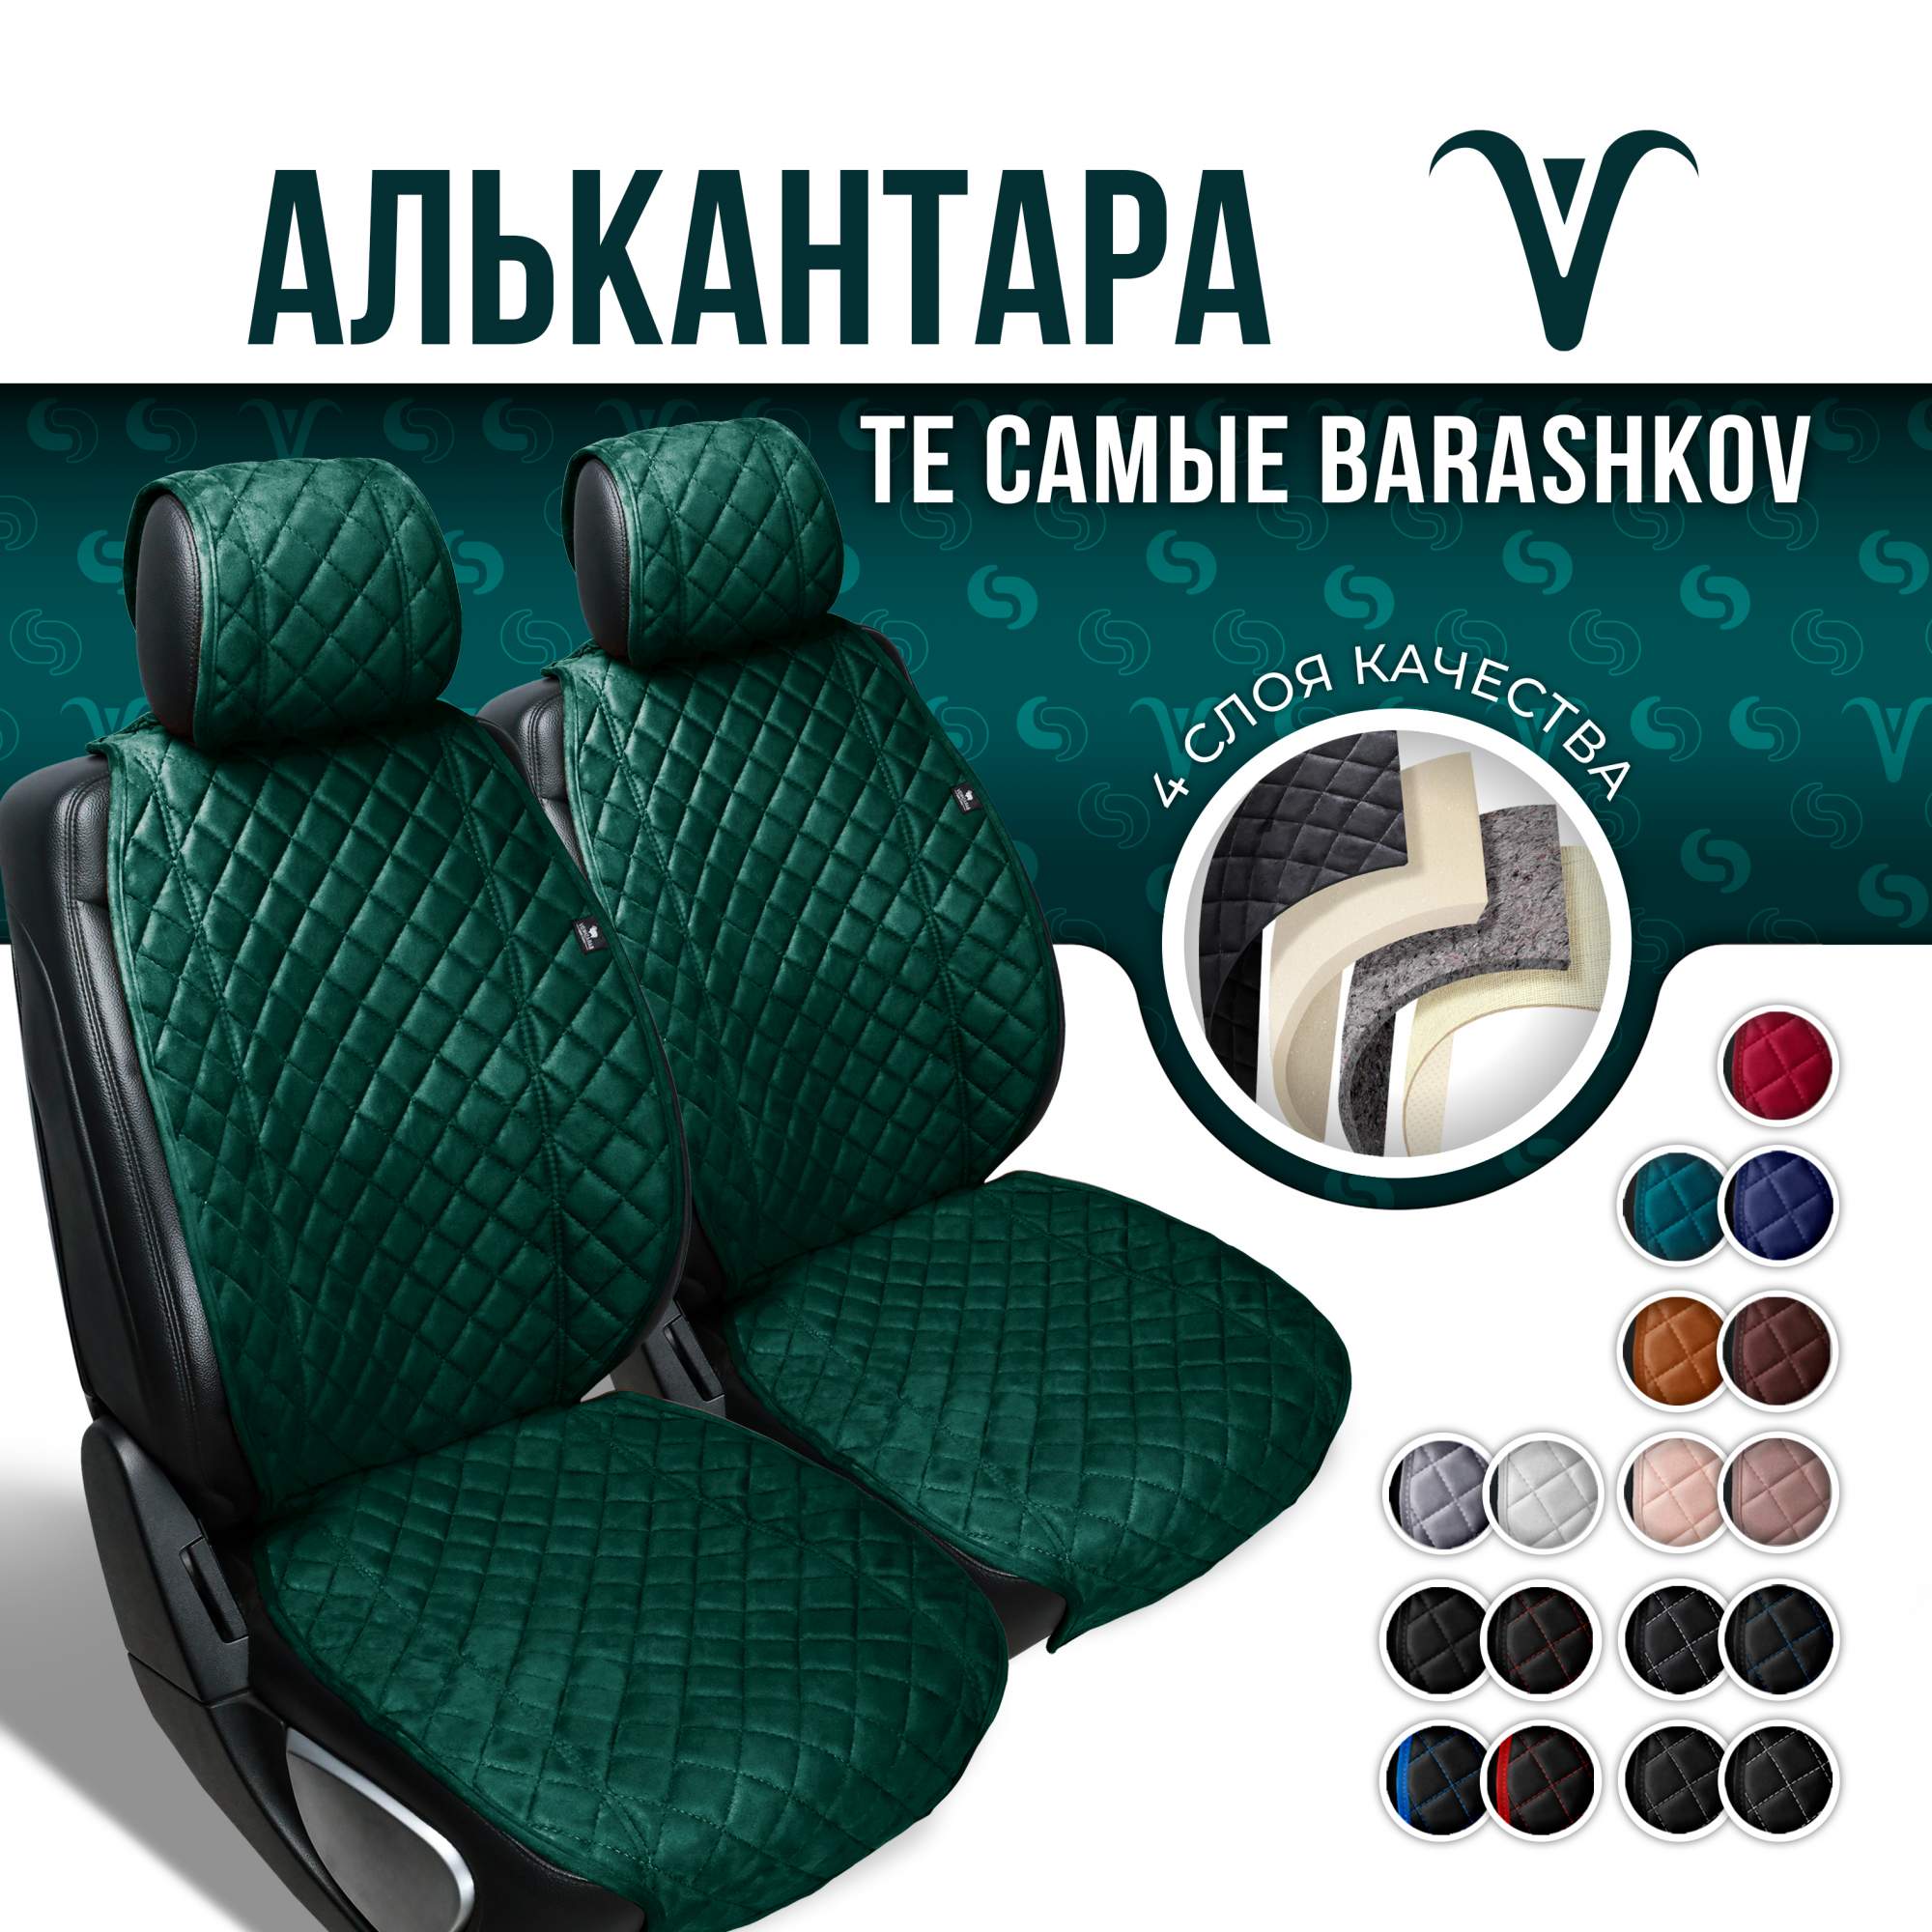 Накидка на сиденье автомобиля Barashkov из алькантары